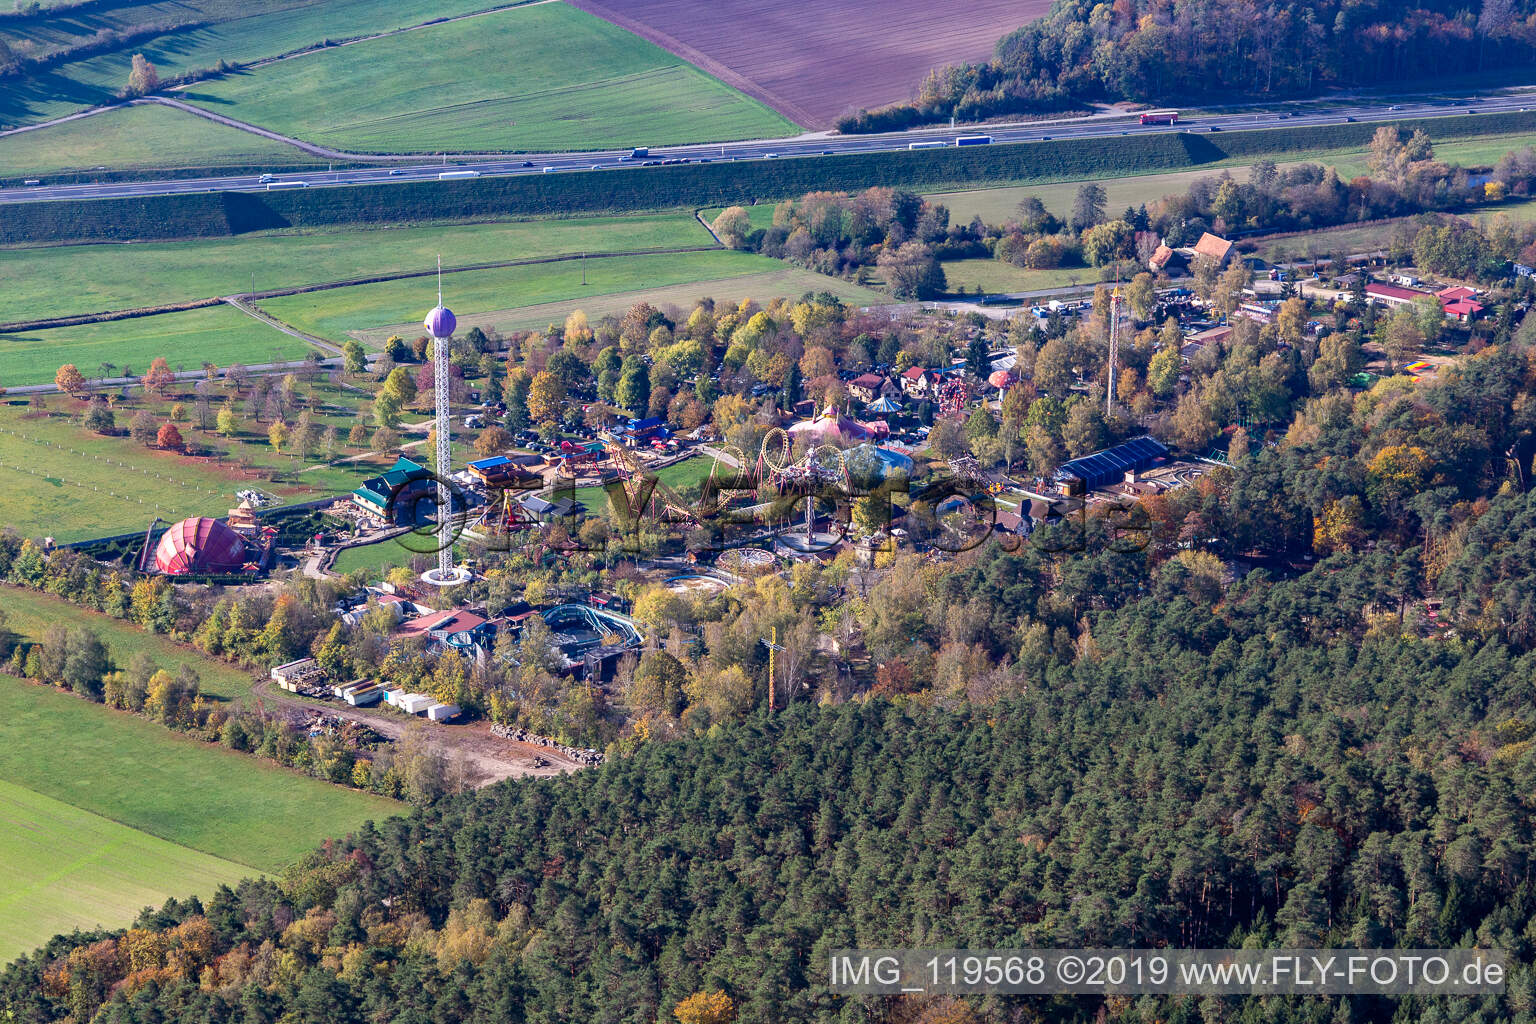 Freizeitzentrum - Vergnügungspark Freizeit-Land Geiselwind in Geiselwind im Bundesland Bayern, Deutschland aus der Luft betrachtet